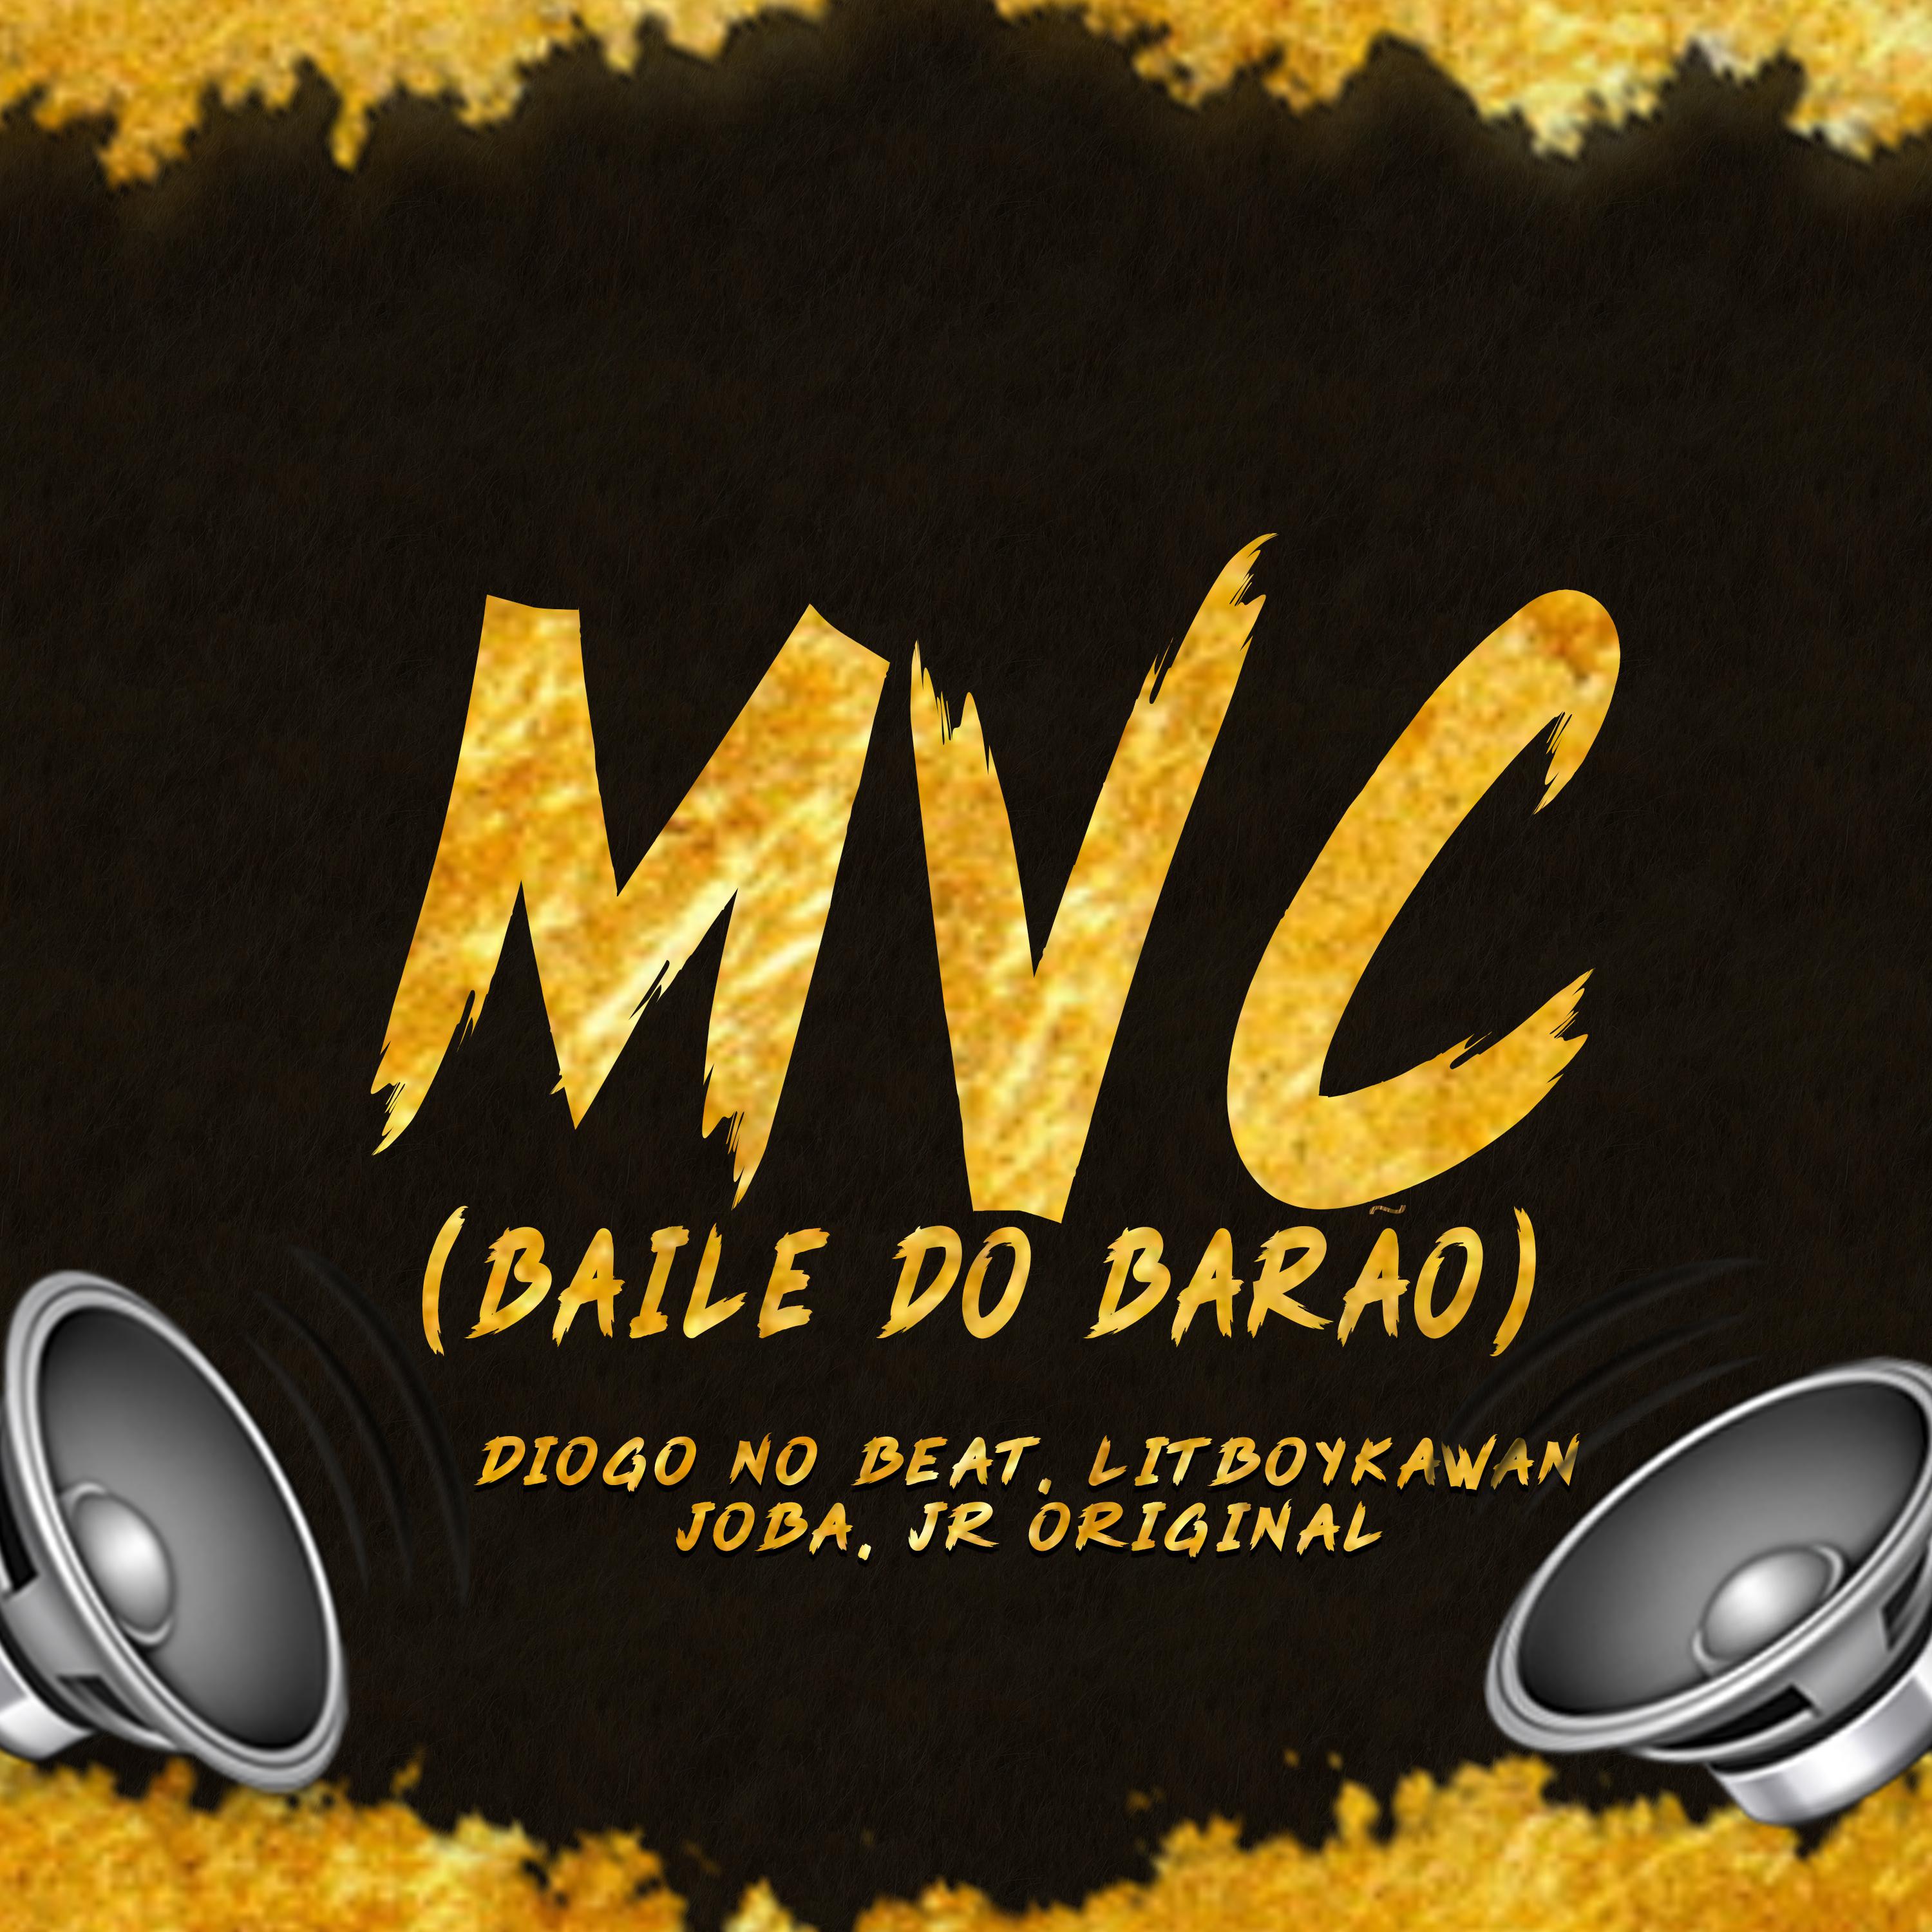 Diogo no Beat - Mvc (Baile do Barão)